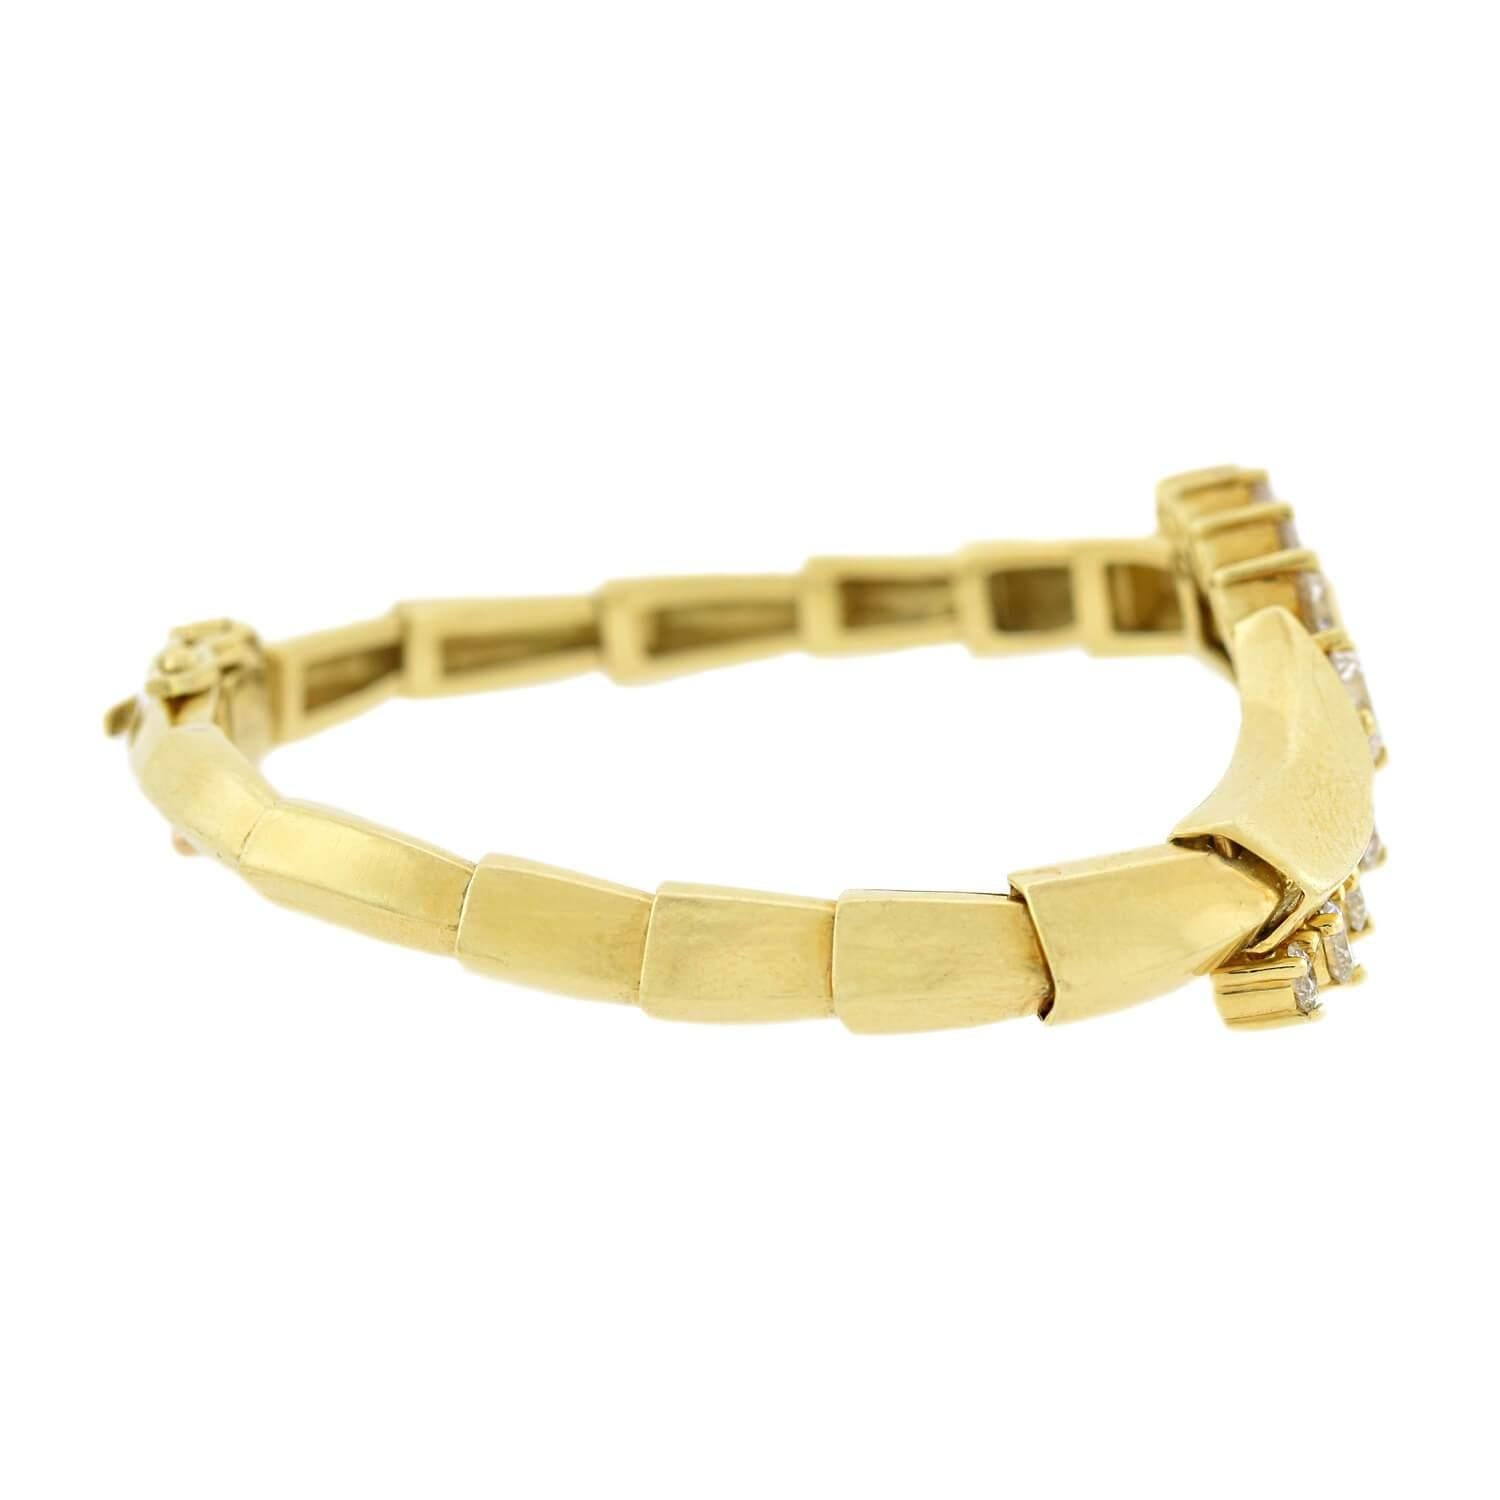 Un fabuleux bracelet contemporain en diamants par le célèbre créateur de bijoux Jose Hess ! Réalisé en or jaune 18 carats, ce bracelet est orné de neuf étincelants diamants Modern Brilliant Cut qui s'incurvent sur le devant d'un motif de type